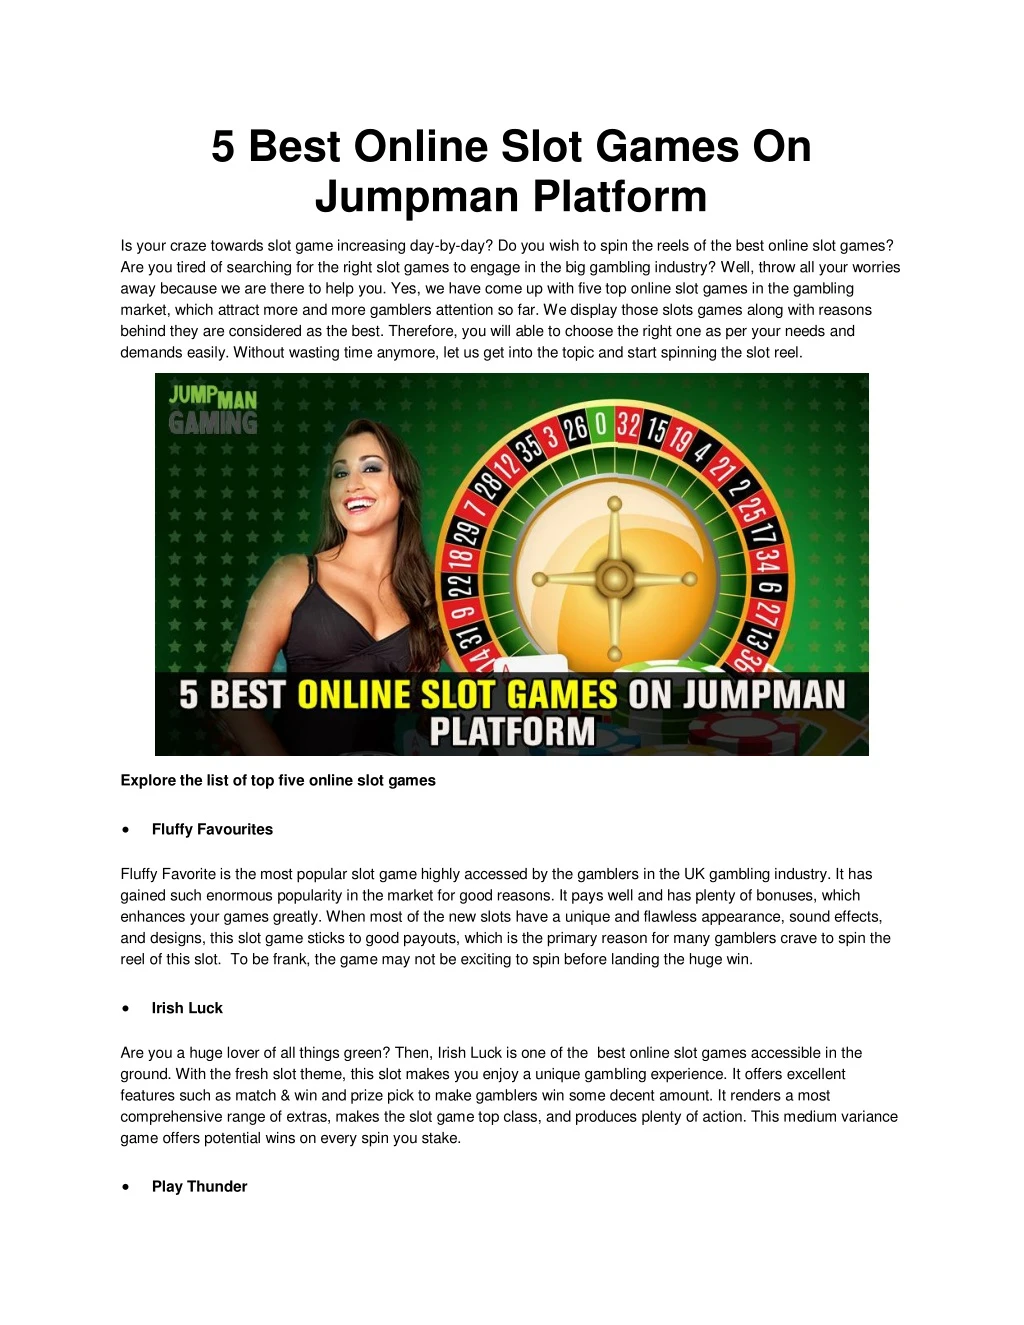 5 best online slot games on jumpman platform